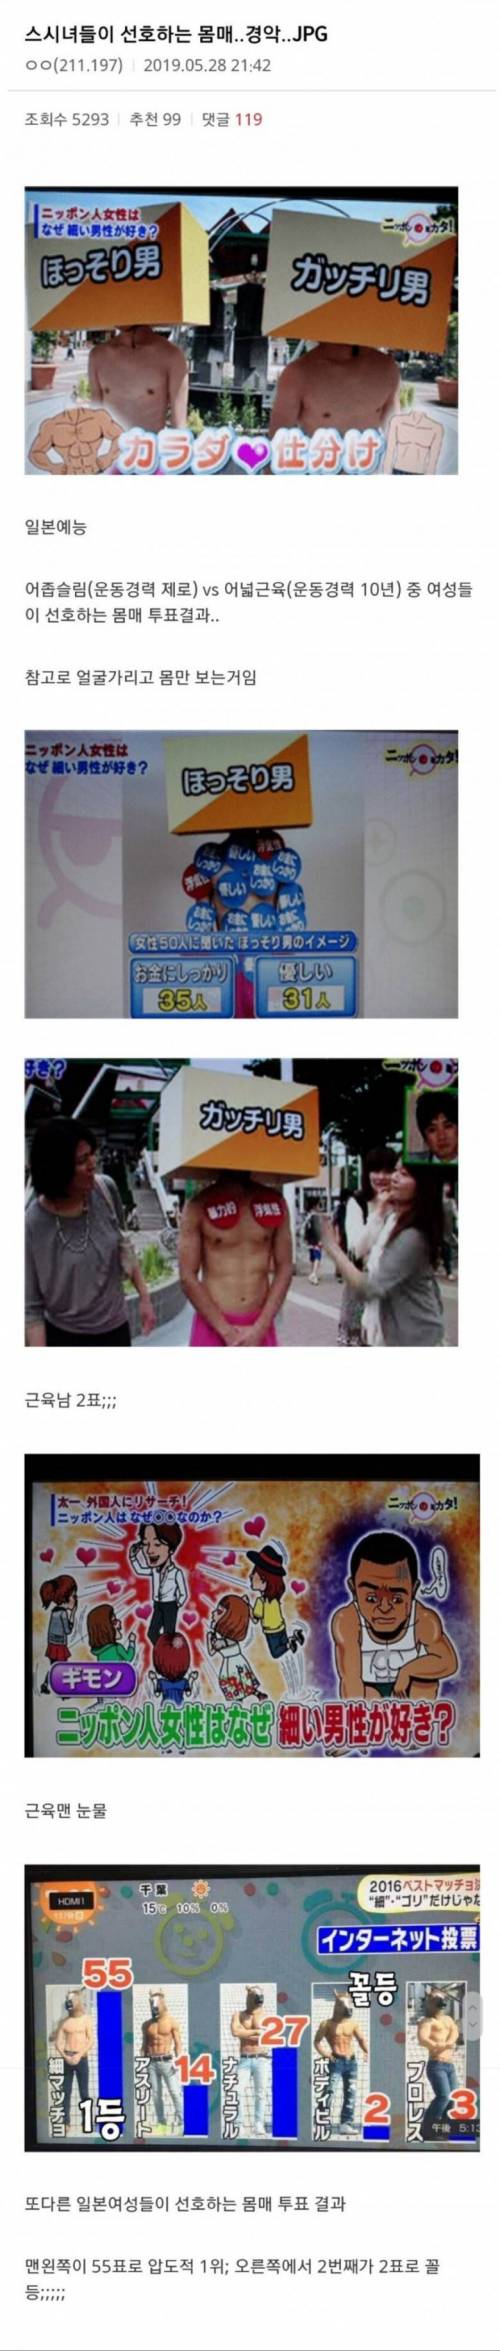 일본녀들이 선호하는 몸매.jpg